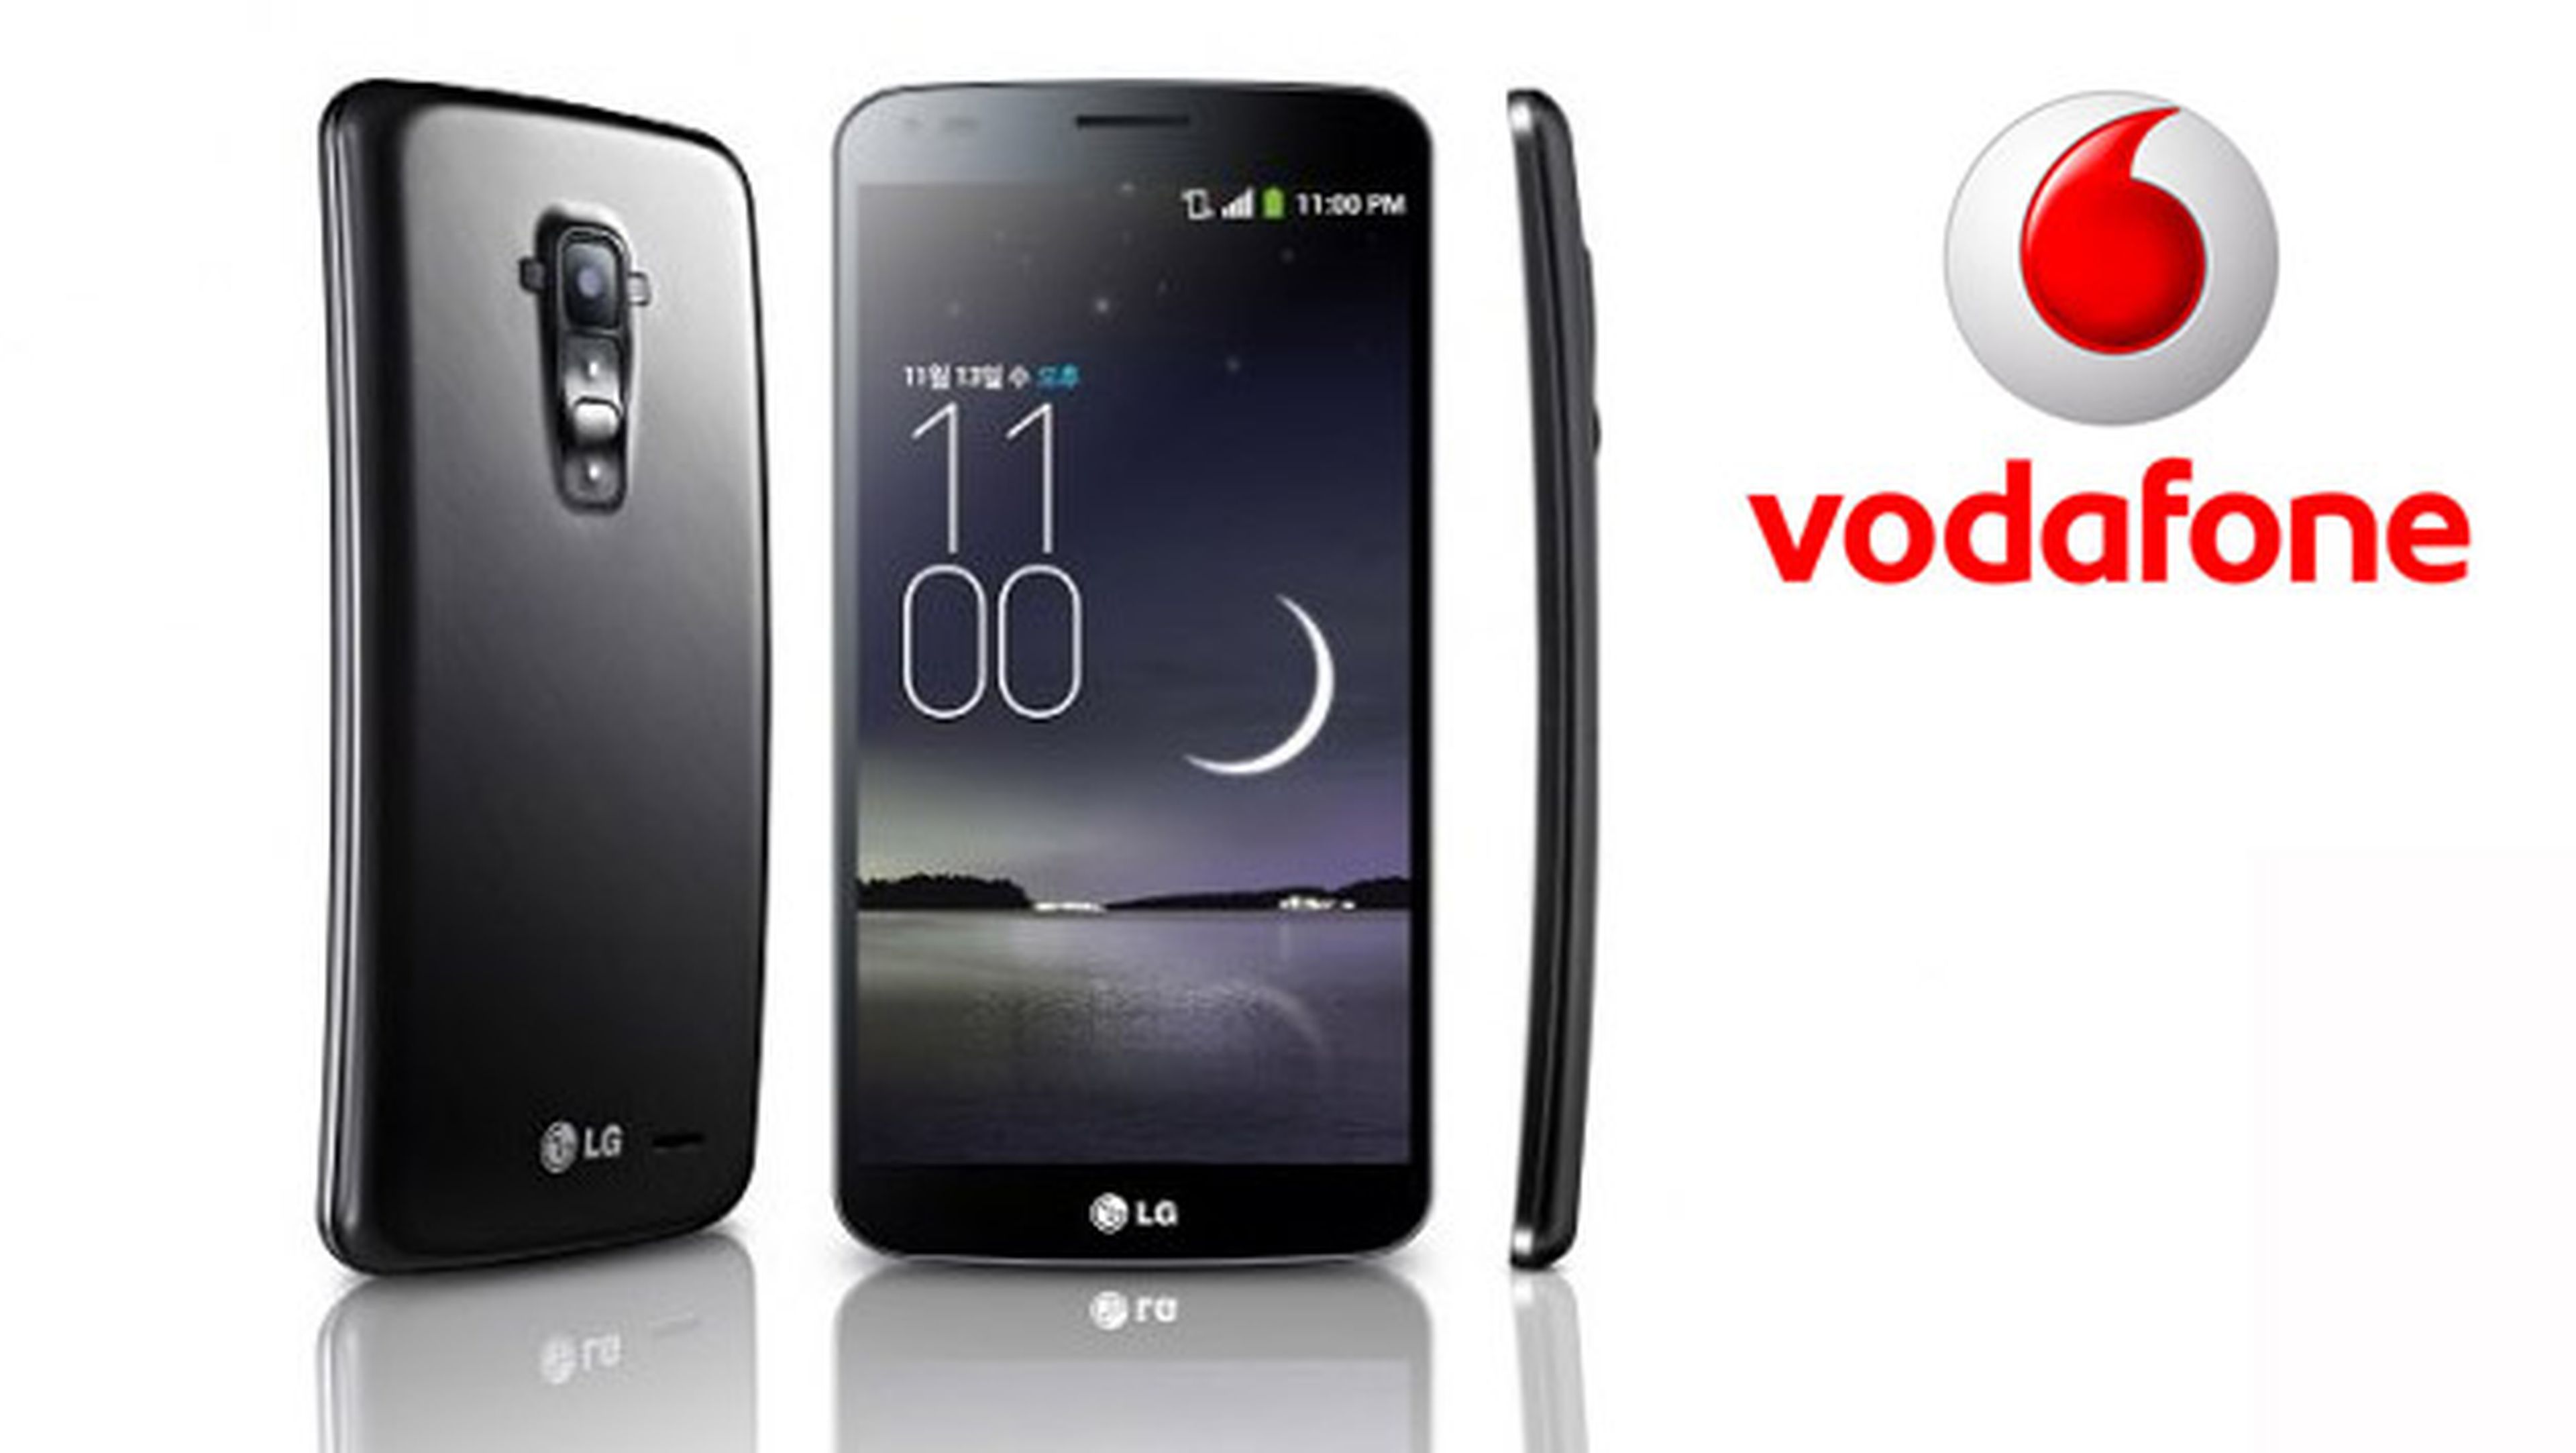 Precios y tarifas del LG G Flex con Vodafone